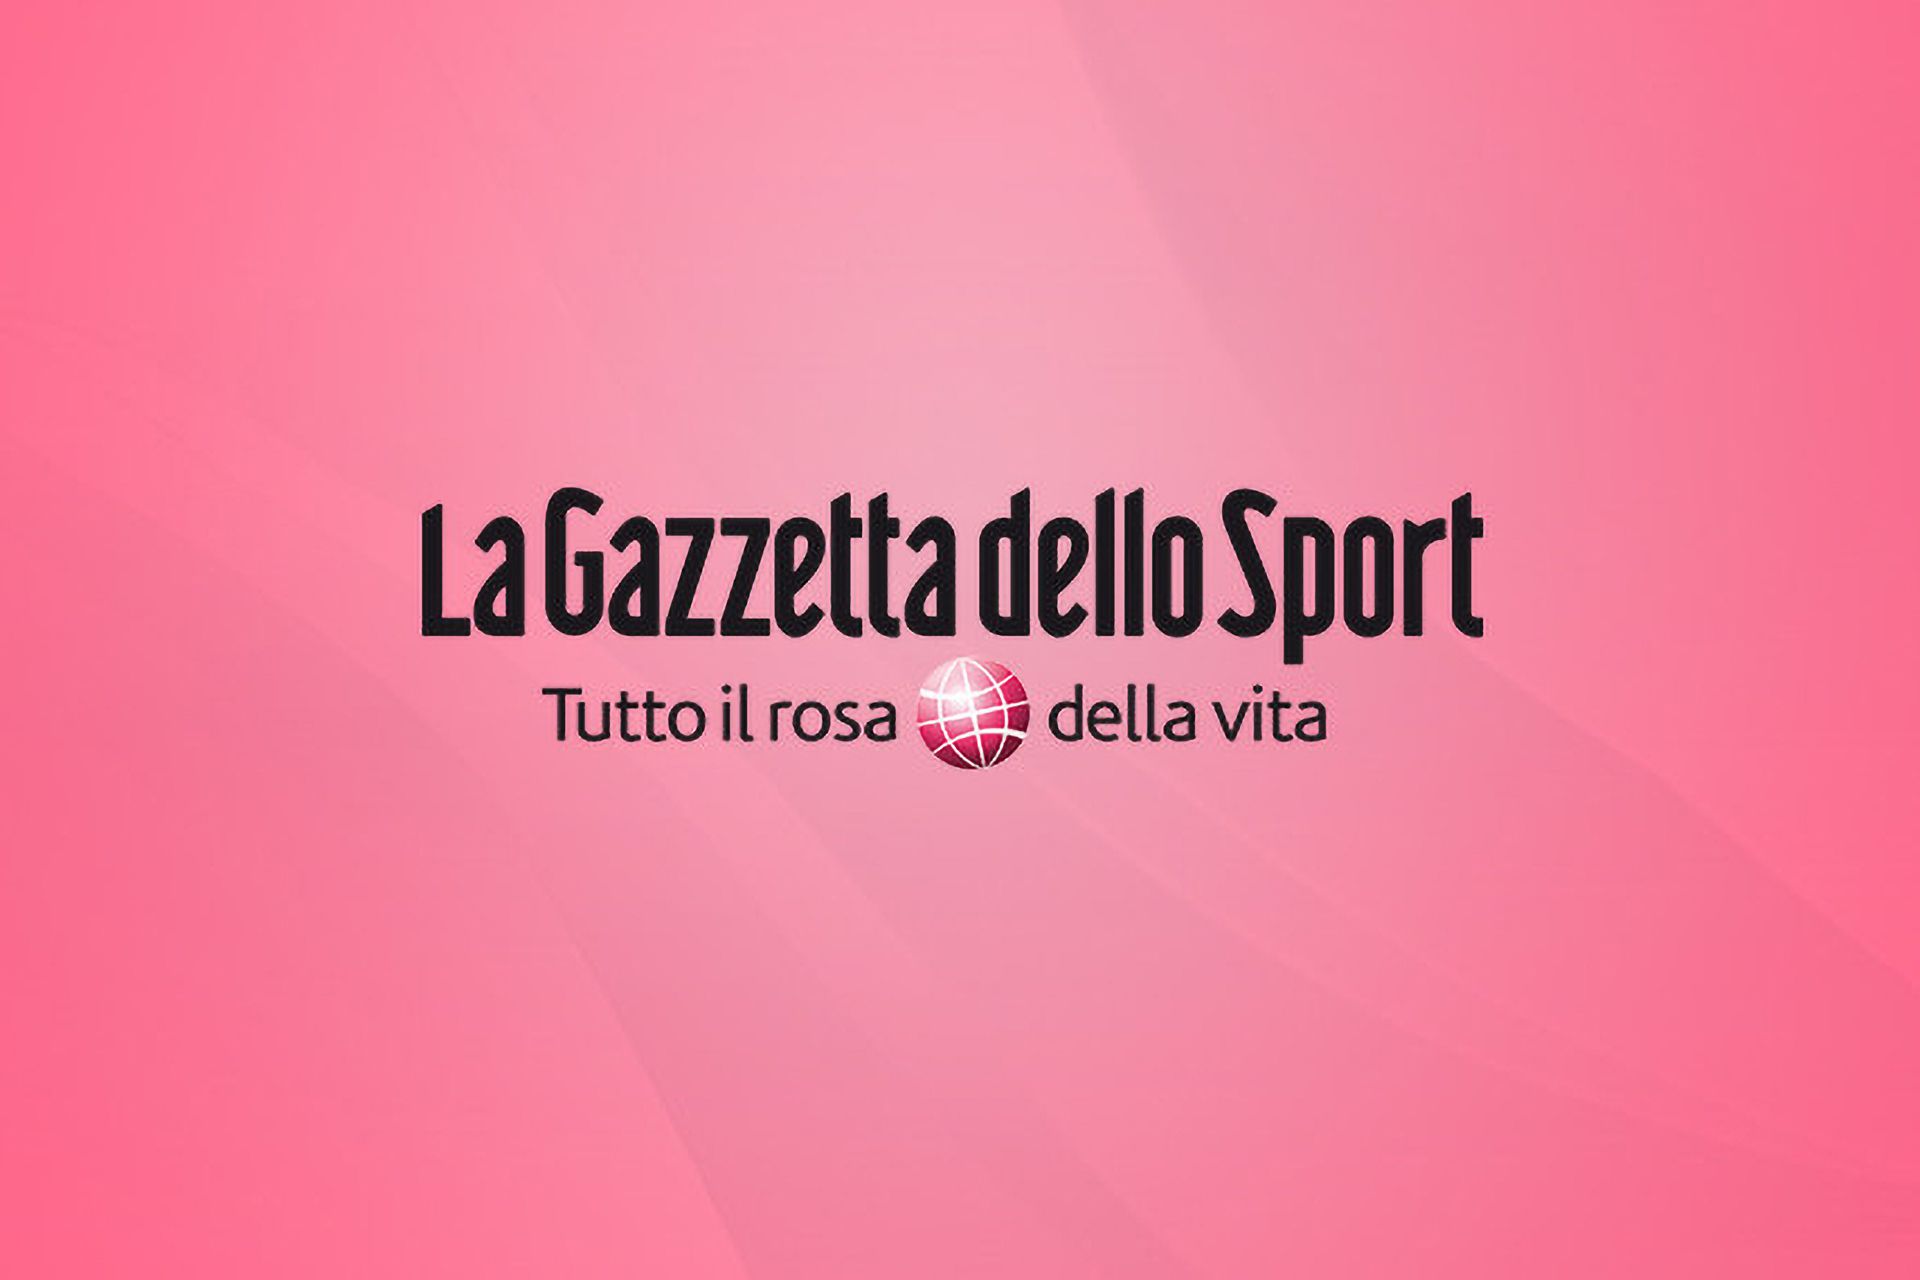 GazzettaSport_1920x1280